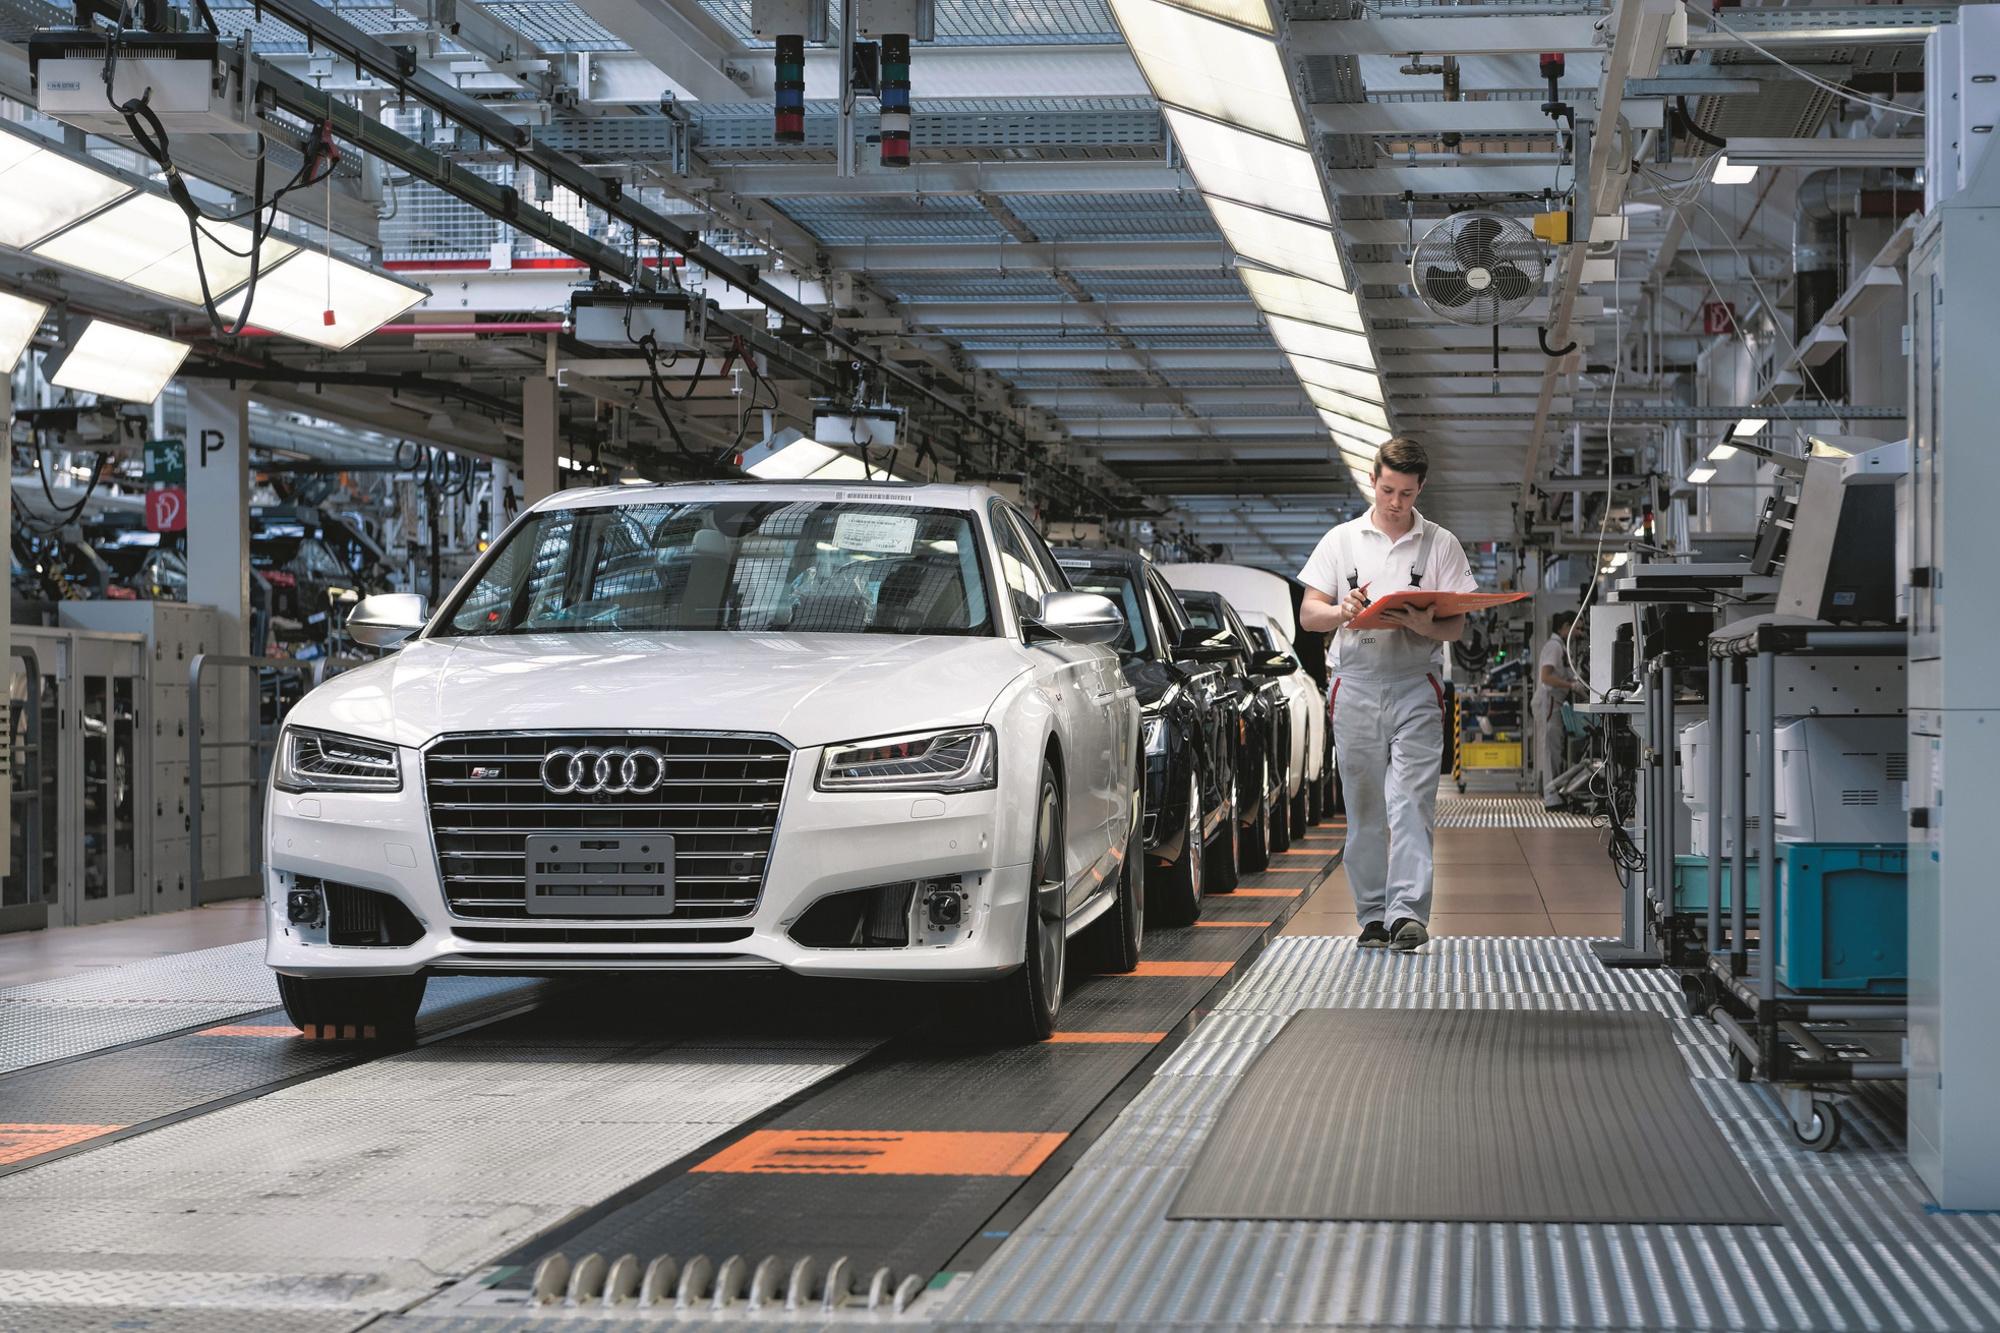 C'est dans l'usine de Neckarsulm, site hautement technologique, que sont assemblés les modèles A6 et A7 d'Audi.